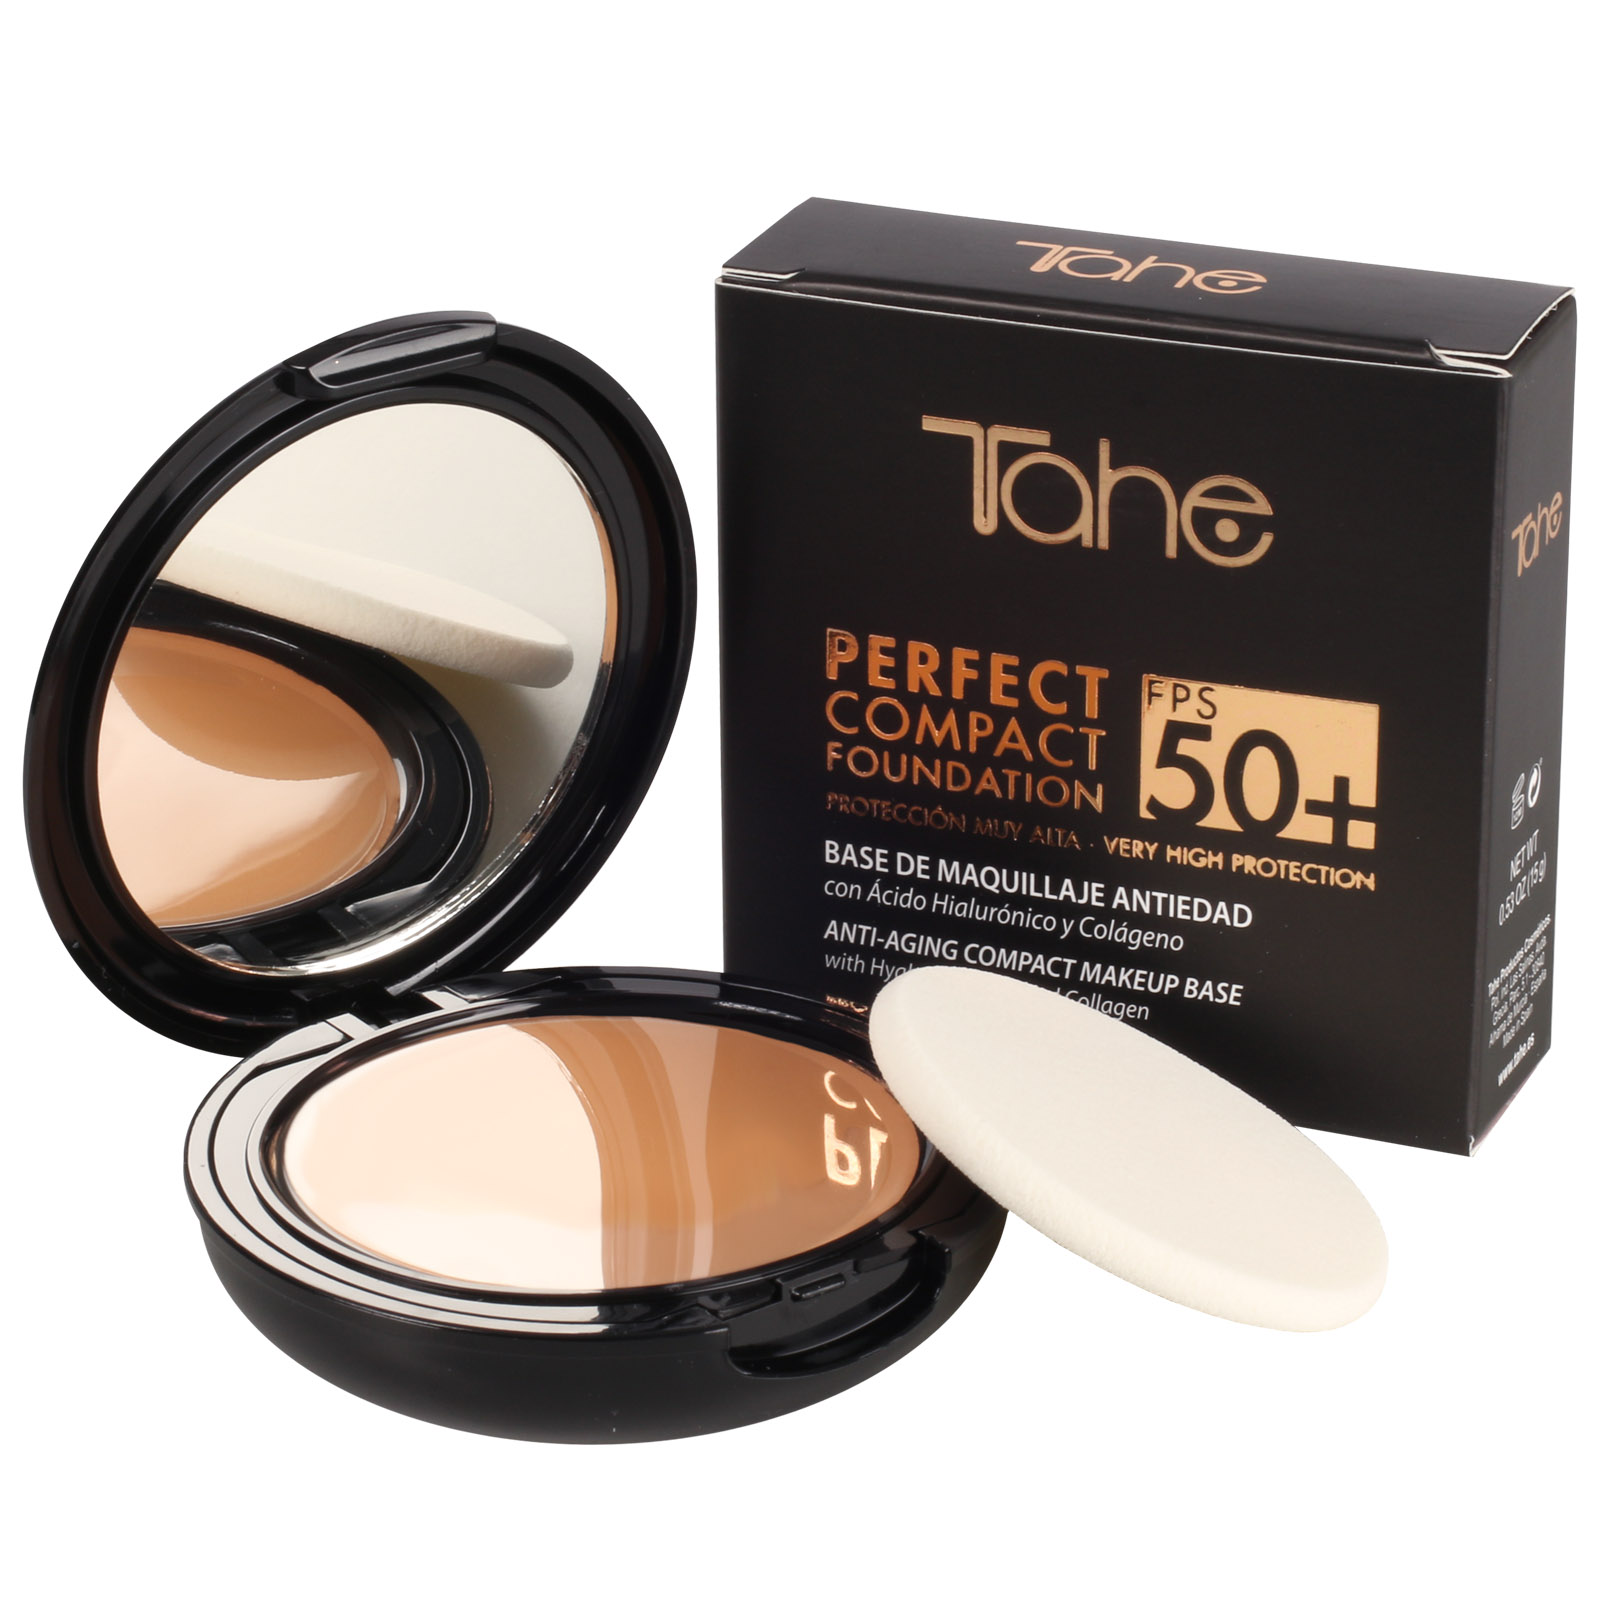 Base de maquillaje con protección solar alta 50+ | Tahe